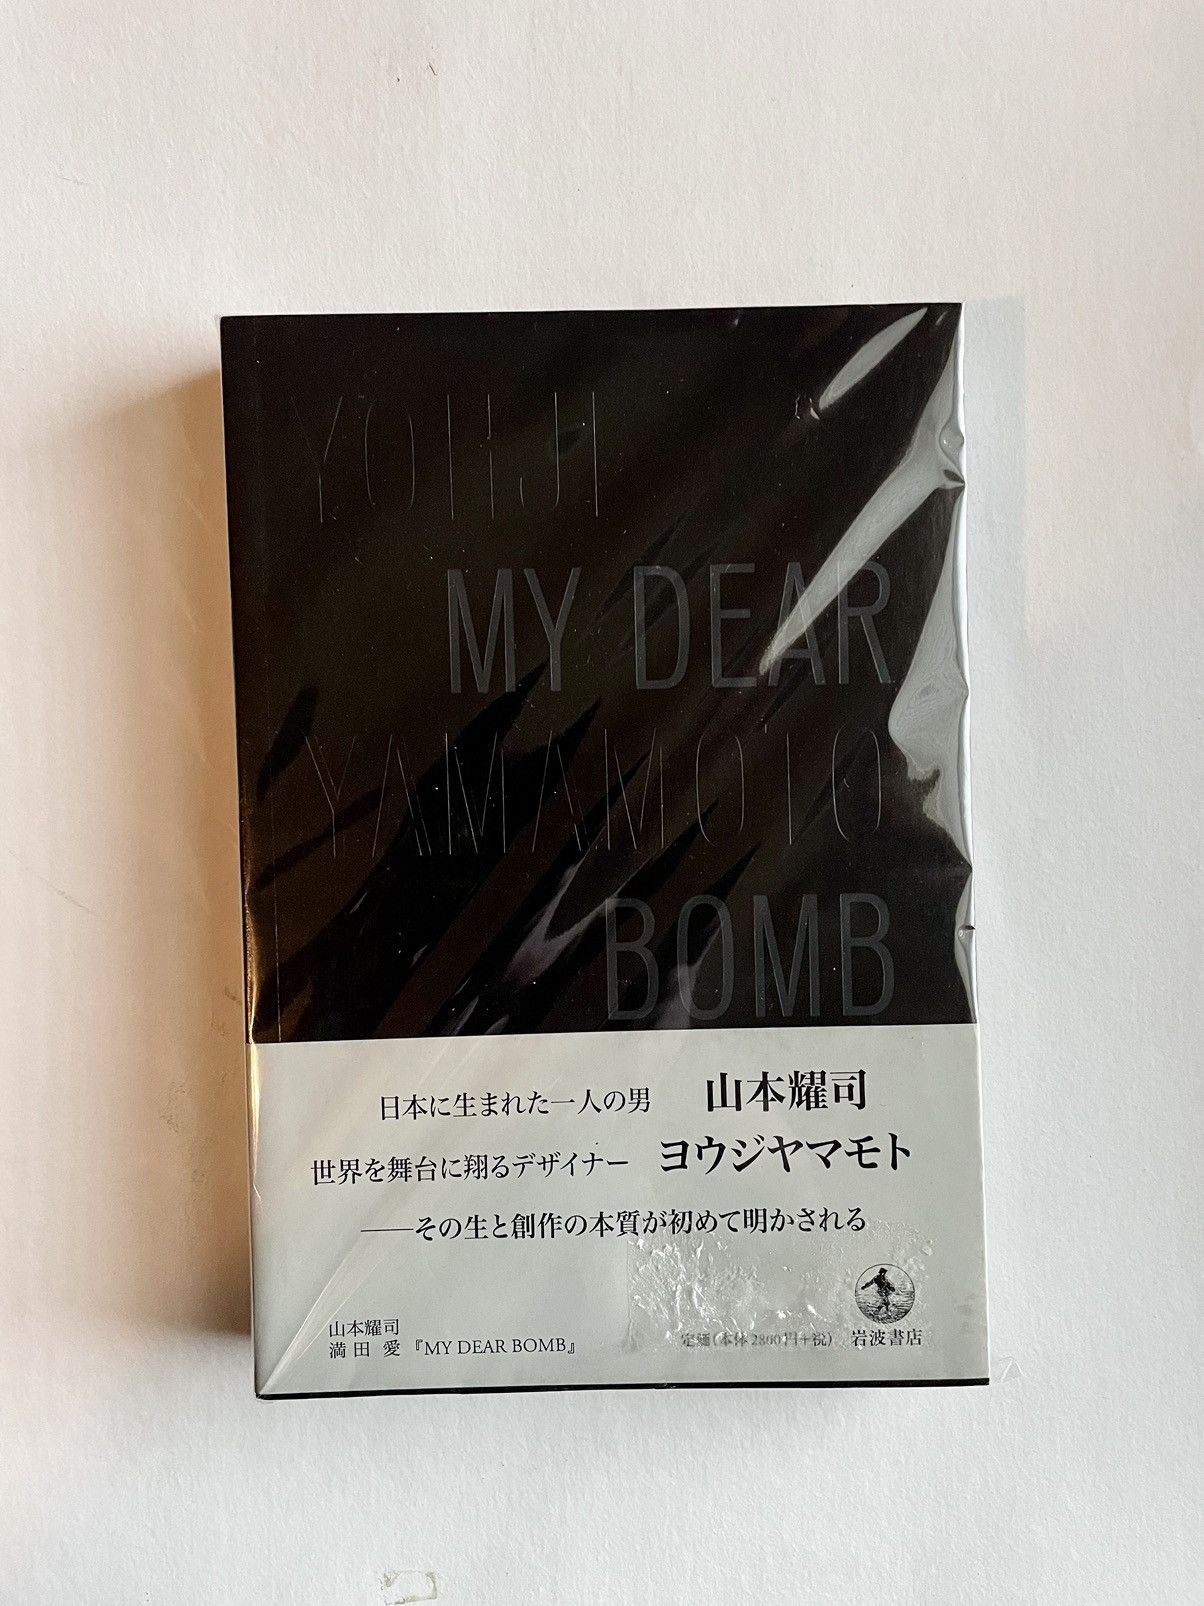 Yohji Yamamoto Yohji Yamamoto: My Dear Bomb rare book | Grailed